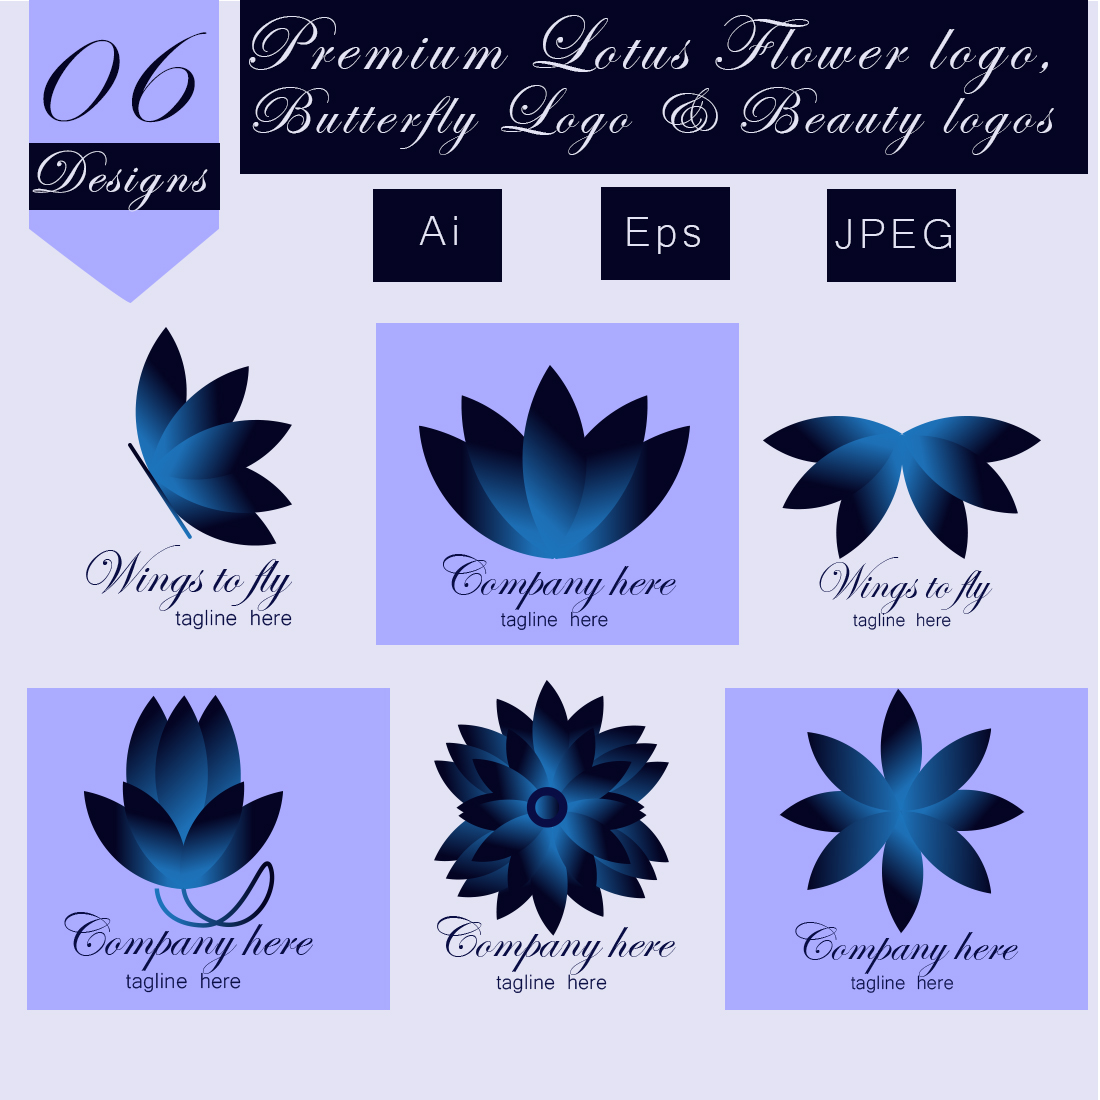 Lotus Flower Logo Vector PNG Images, Luxury Monogram Lotus Flower